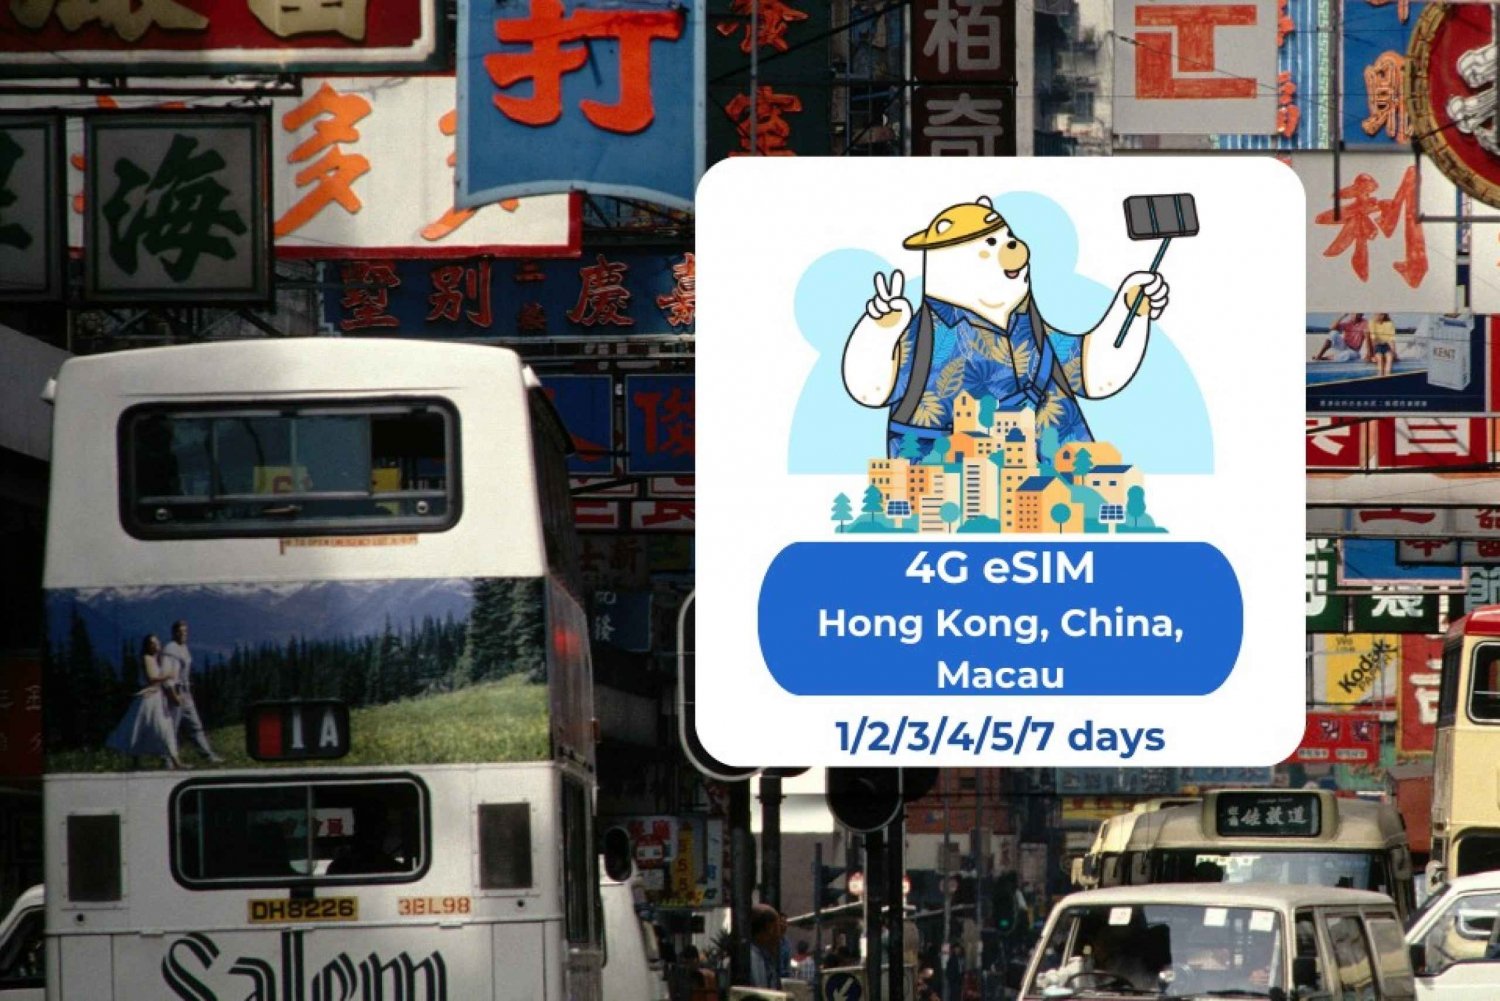 Hong Kong - China - Macau: Dados móveis eSIM 1/2/3/4/5/7 dias